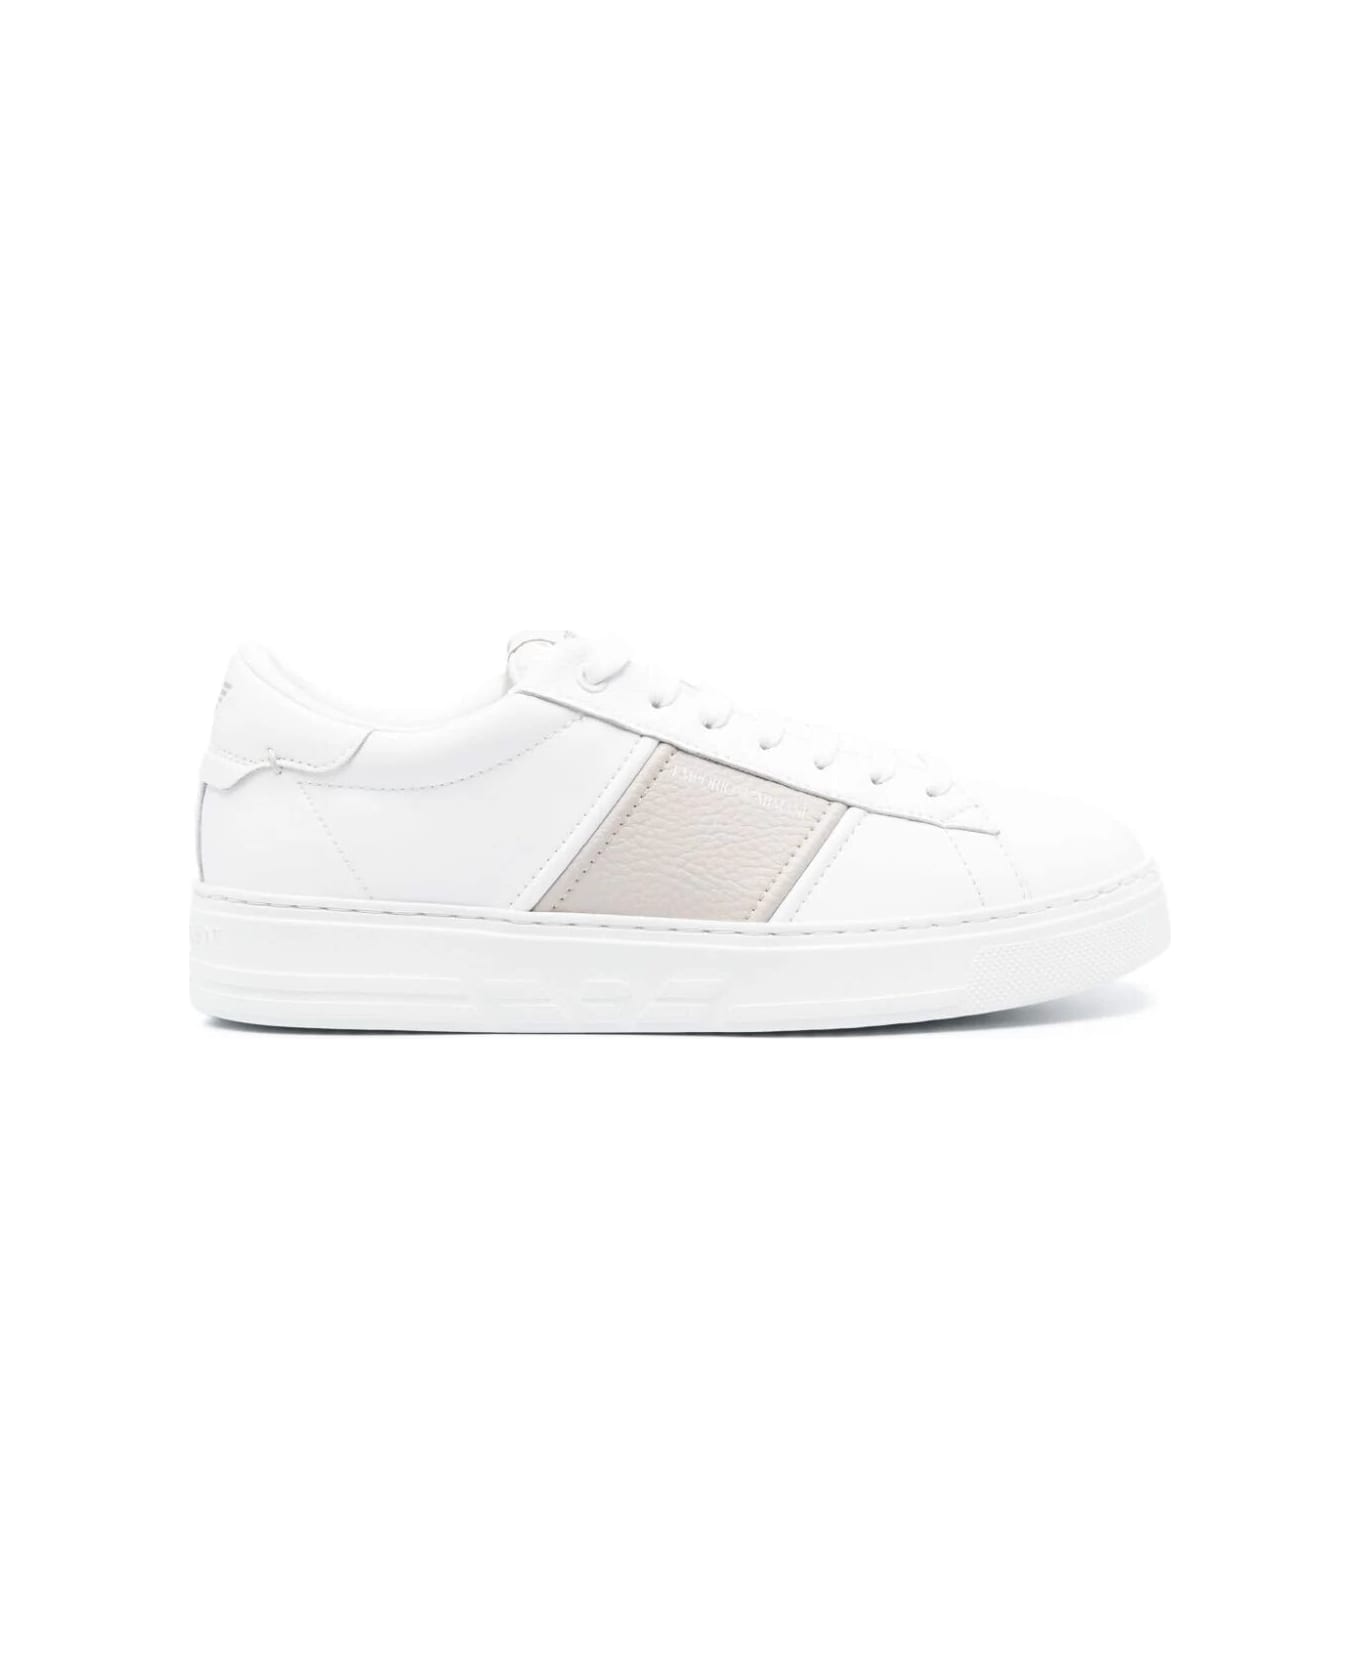 Emporio Armani Sneaker Mesh - Opt White Silver